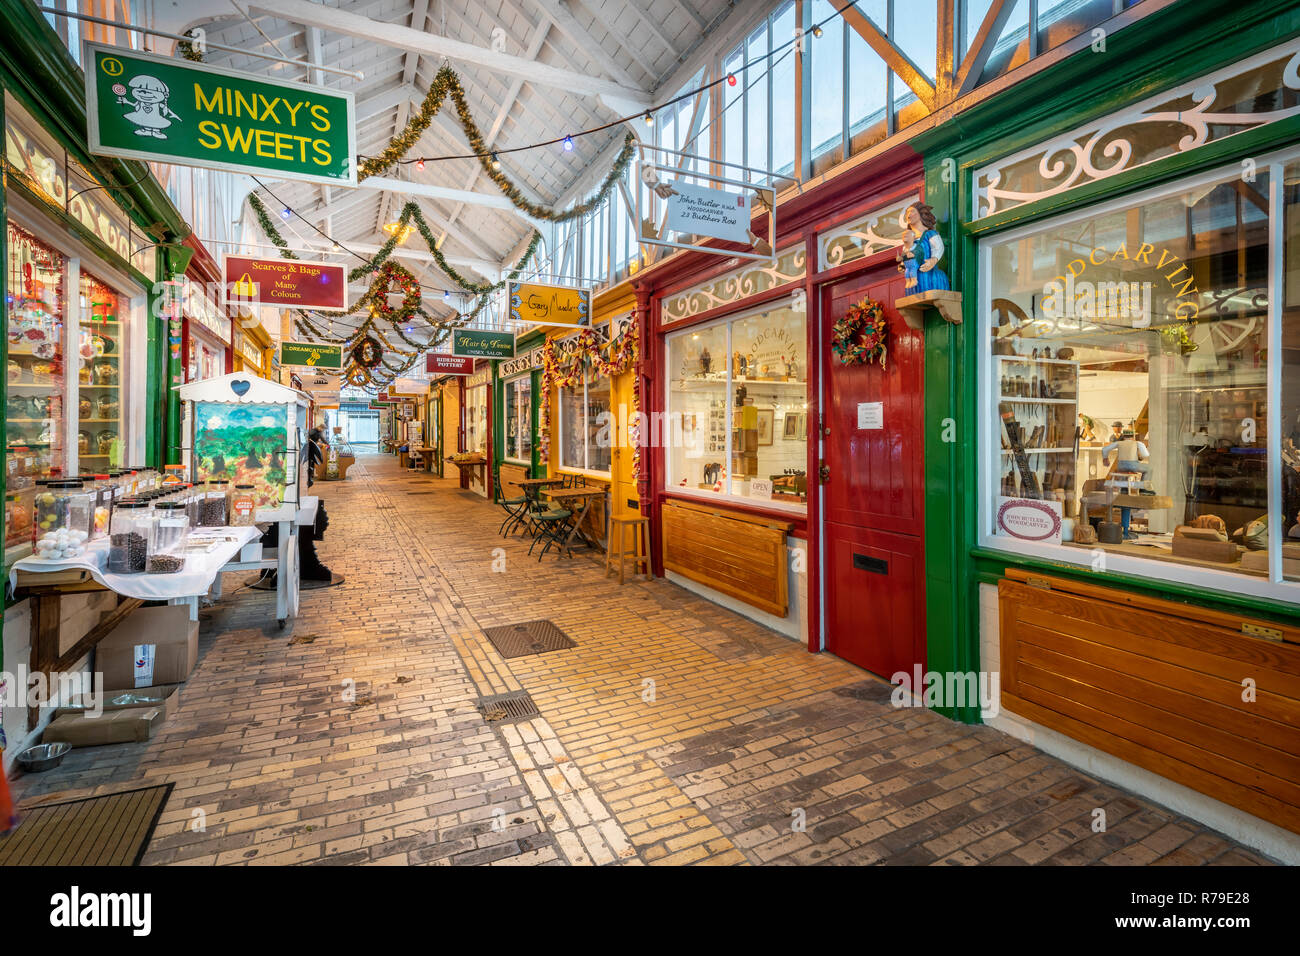 Le marché de pannier à Bideford historique a été construit en 1884 pour accueillir le marché aux poissons, les étals de boucherie et corn exchange. Les épouses des agriculteurs a produ Banque D'Images